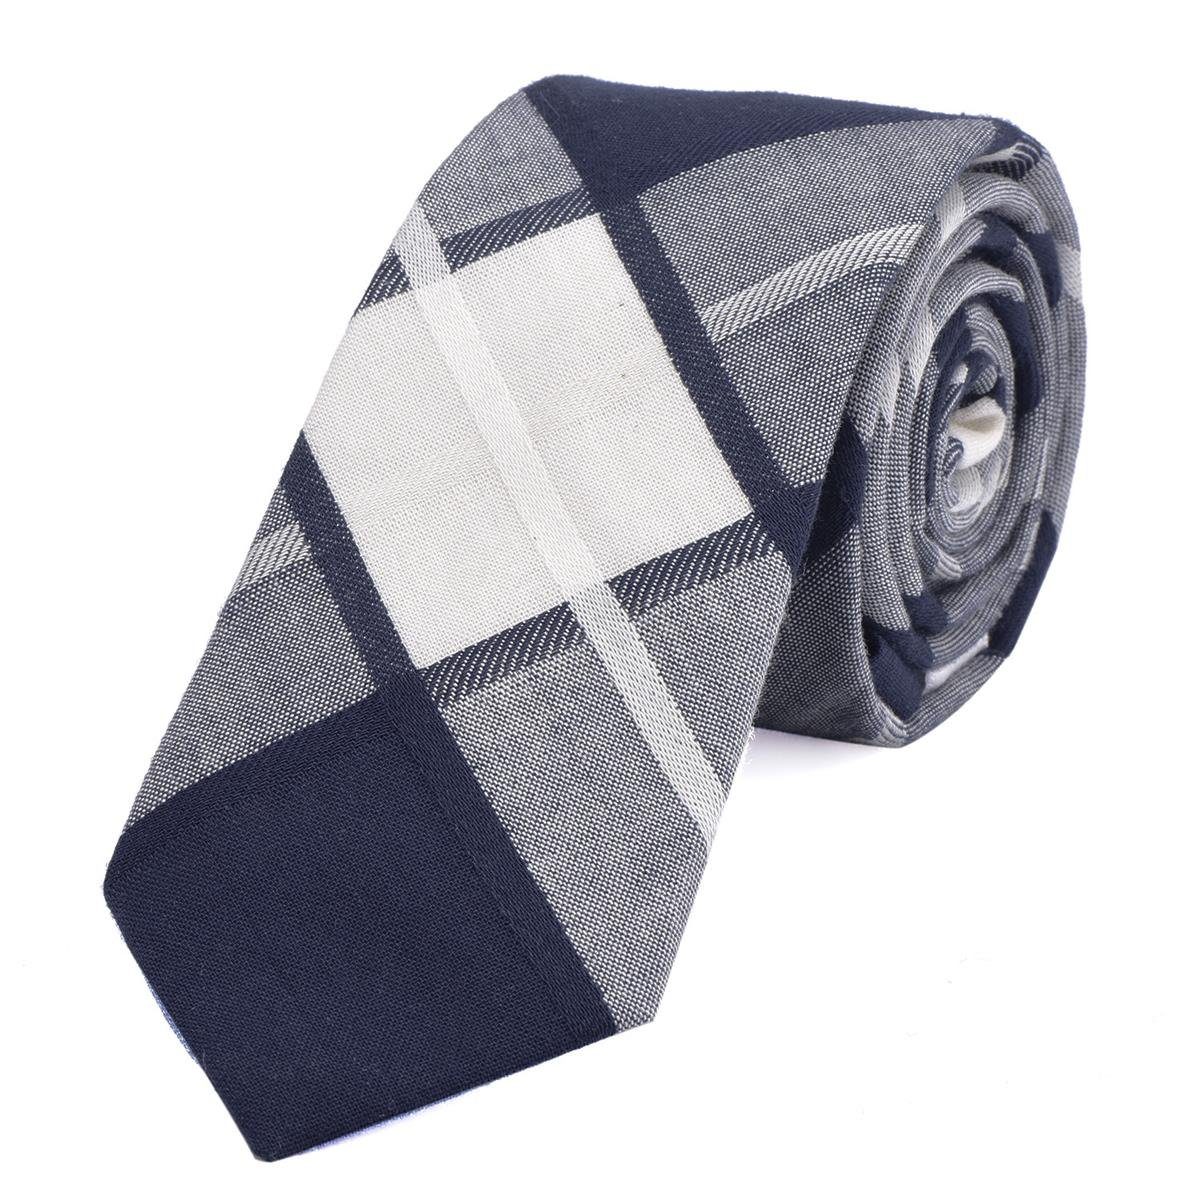 DonDon Krawatte Herren Krawatte 6 cm mit Karos oder Streifen (Packung, 1-St., 1x Krawatte) Baumwolle, kariert oder gestreift, für Büro oder festliche Veranstaltungen blau-elfenbein kariert